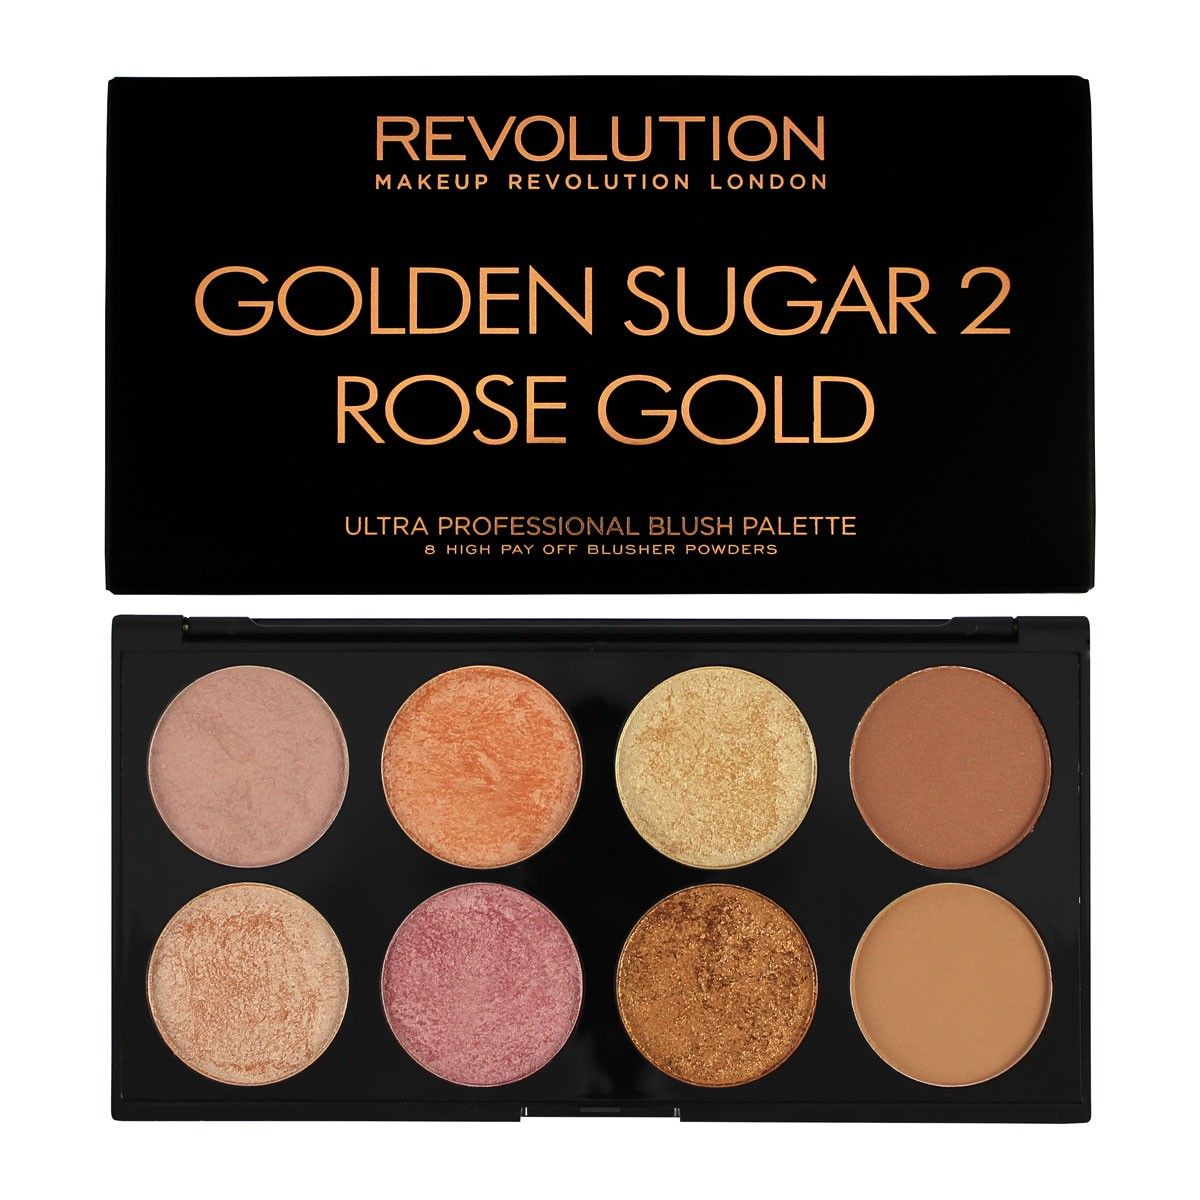 Makeup Revolution Golden Sugar 2 Rose Gold Ultra Professional Blush Palette